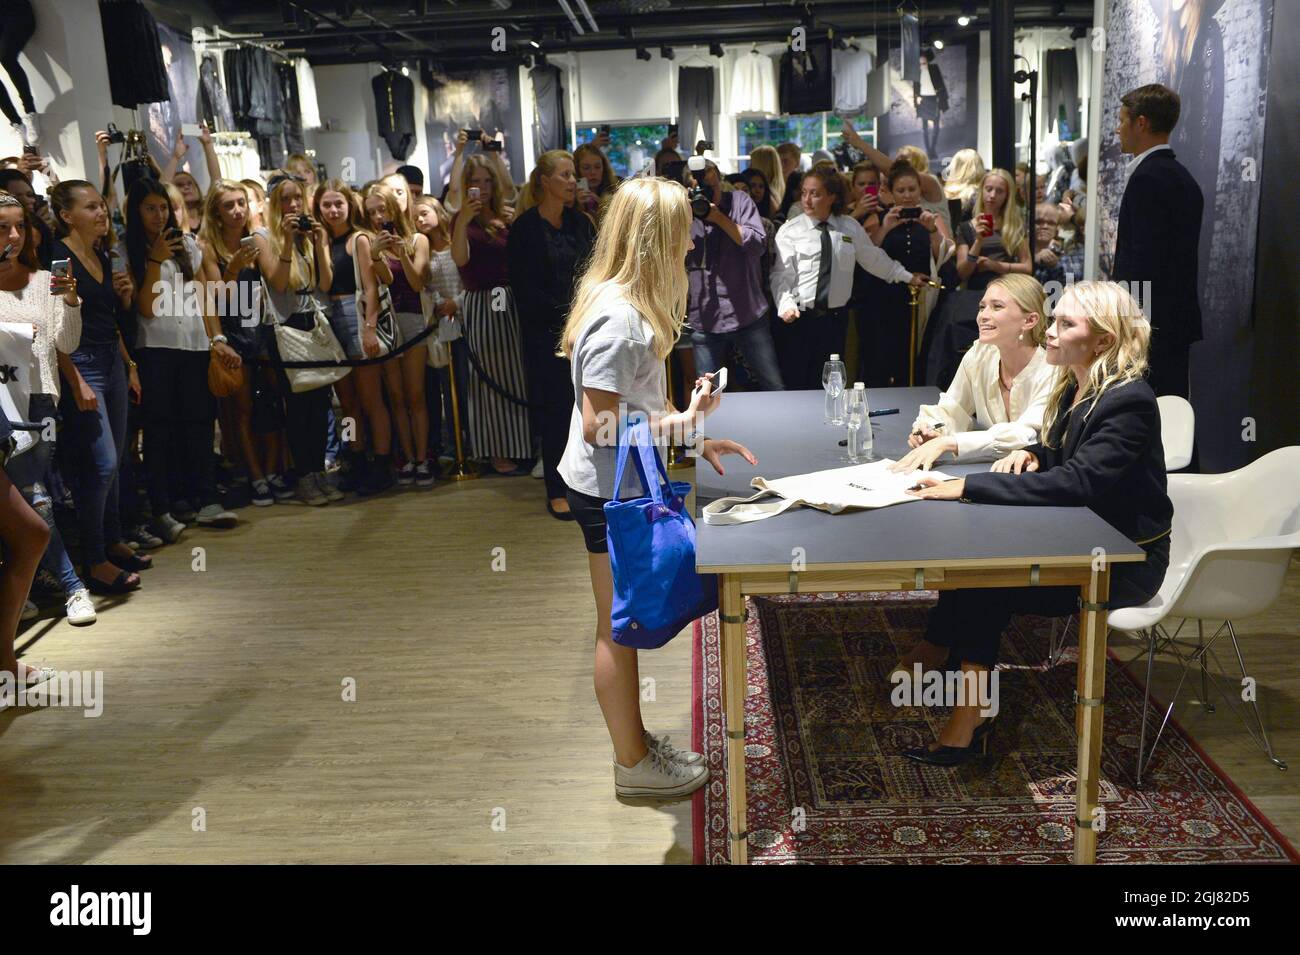 ESTOCOLMO 20130808 Las actrices y empresarios estadounidenses Olsen gemelos están en Estocolmo para promover su cooperación con la marca de ropa Bik Bok. A la izquierda Mary-Kate Olsen y a la derecha Ashley Olsen firmando autógrafos. Foto: Henrik Montgomery / SCANPIX / kod: 10060 Foto de stock